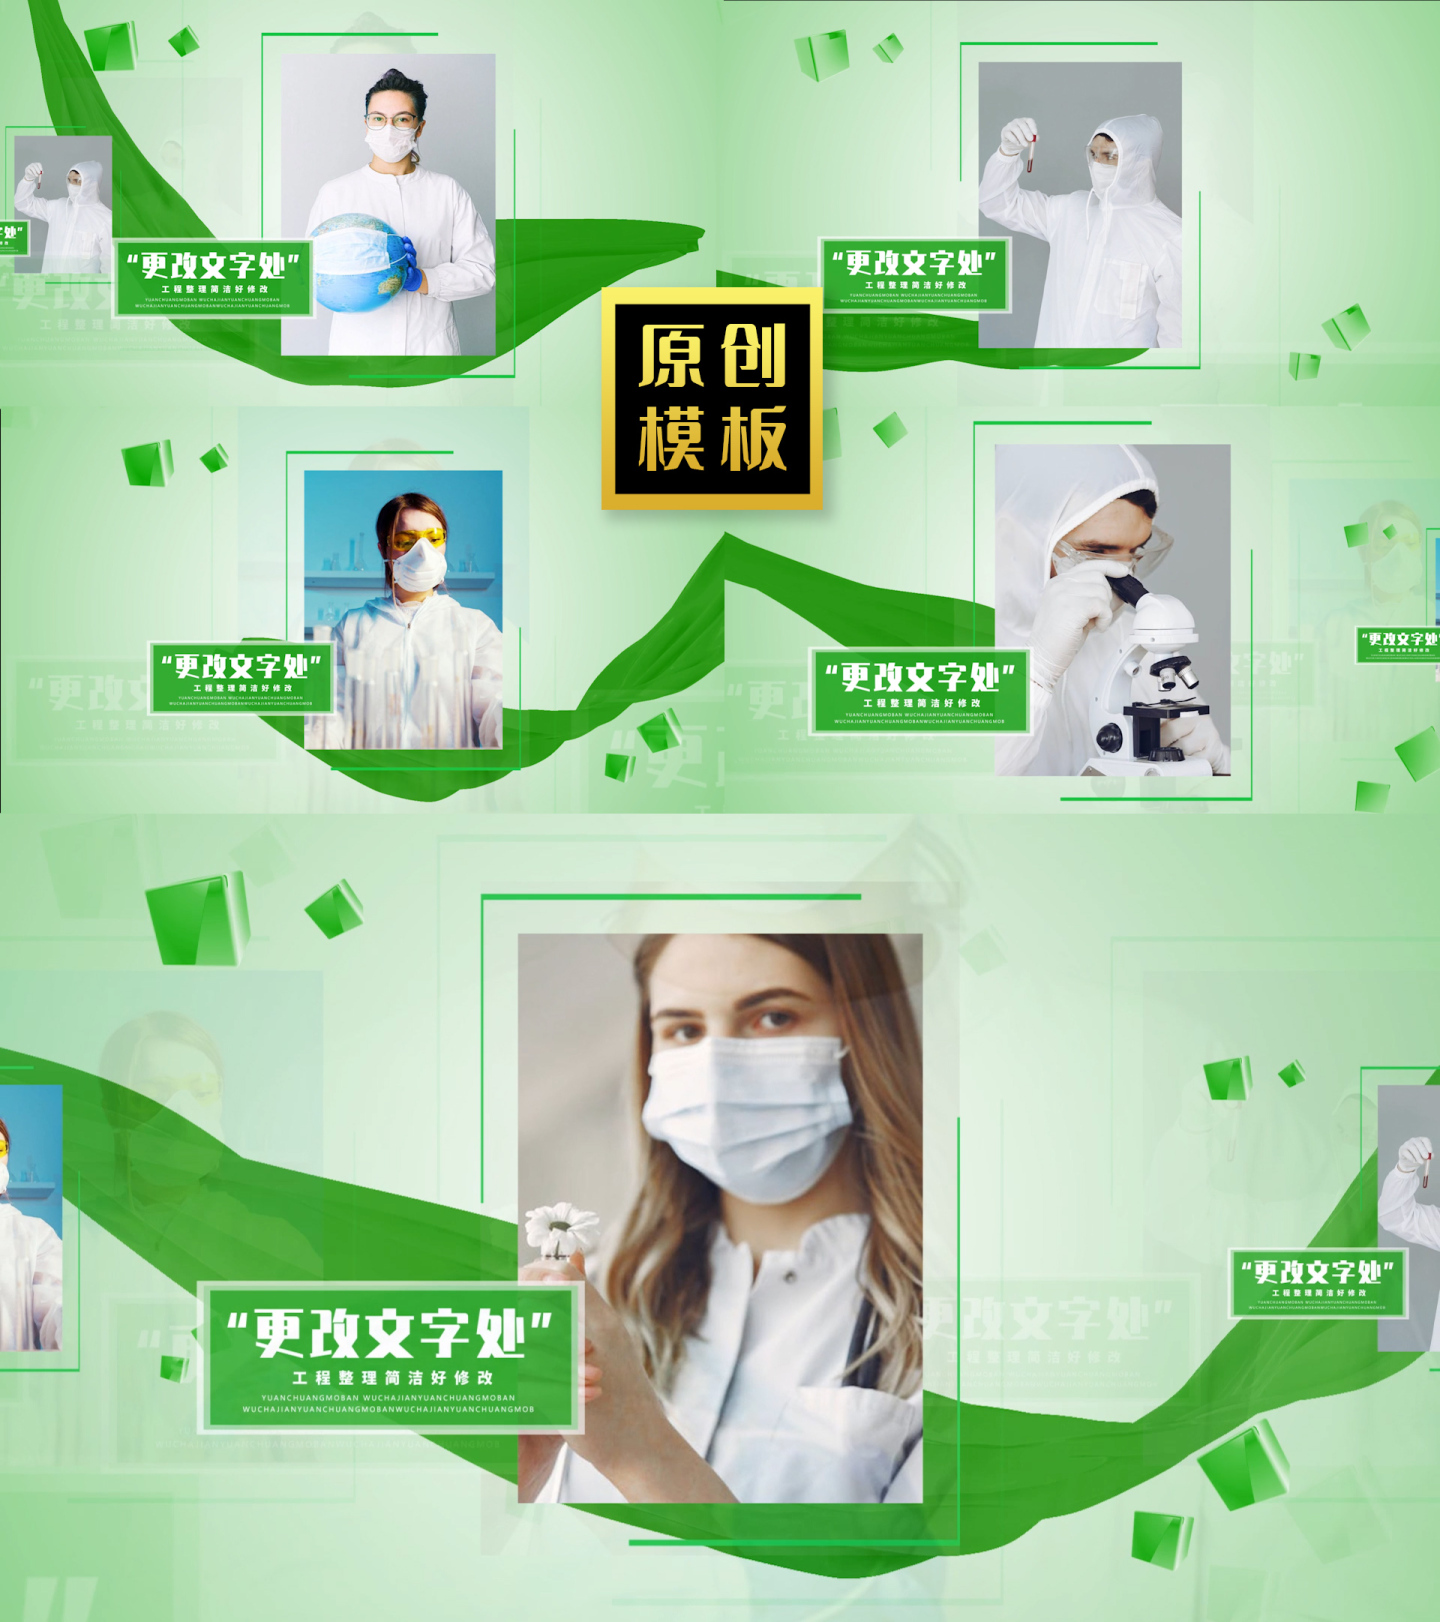 48图绿色环保医院专家人物照片介绍包装